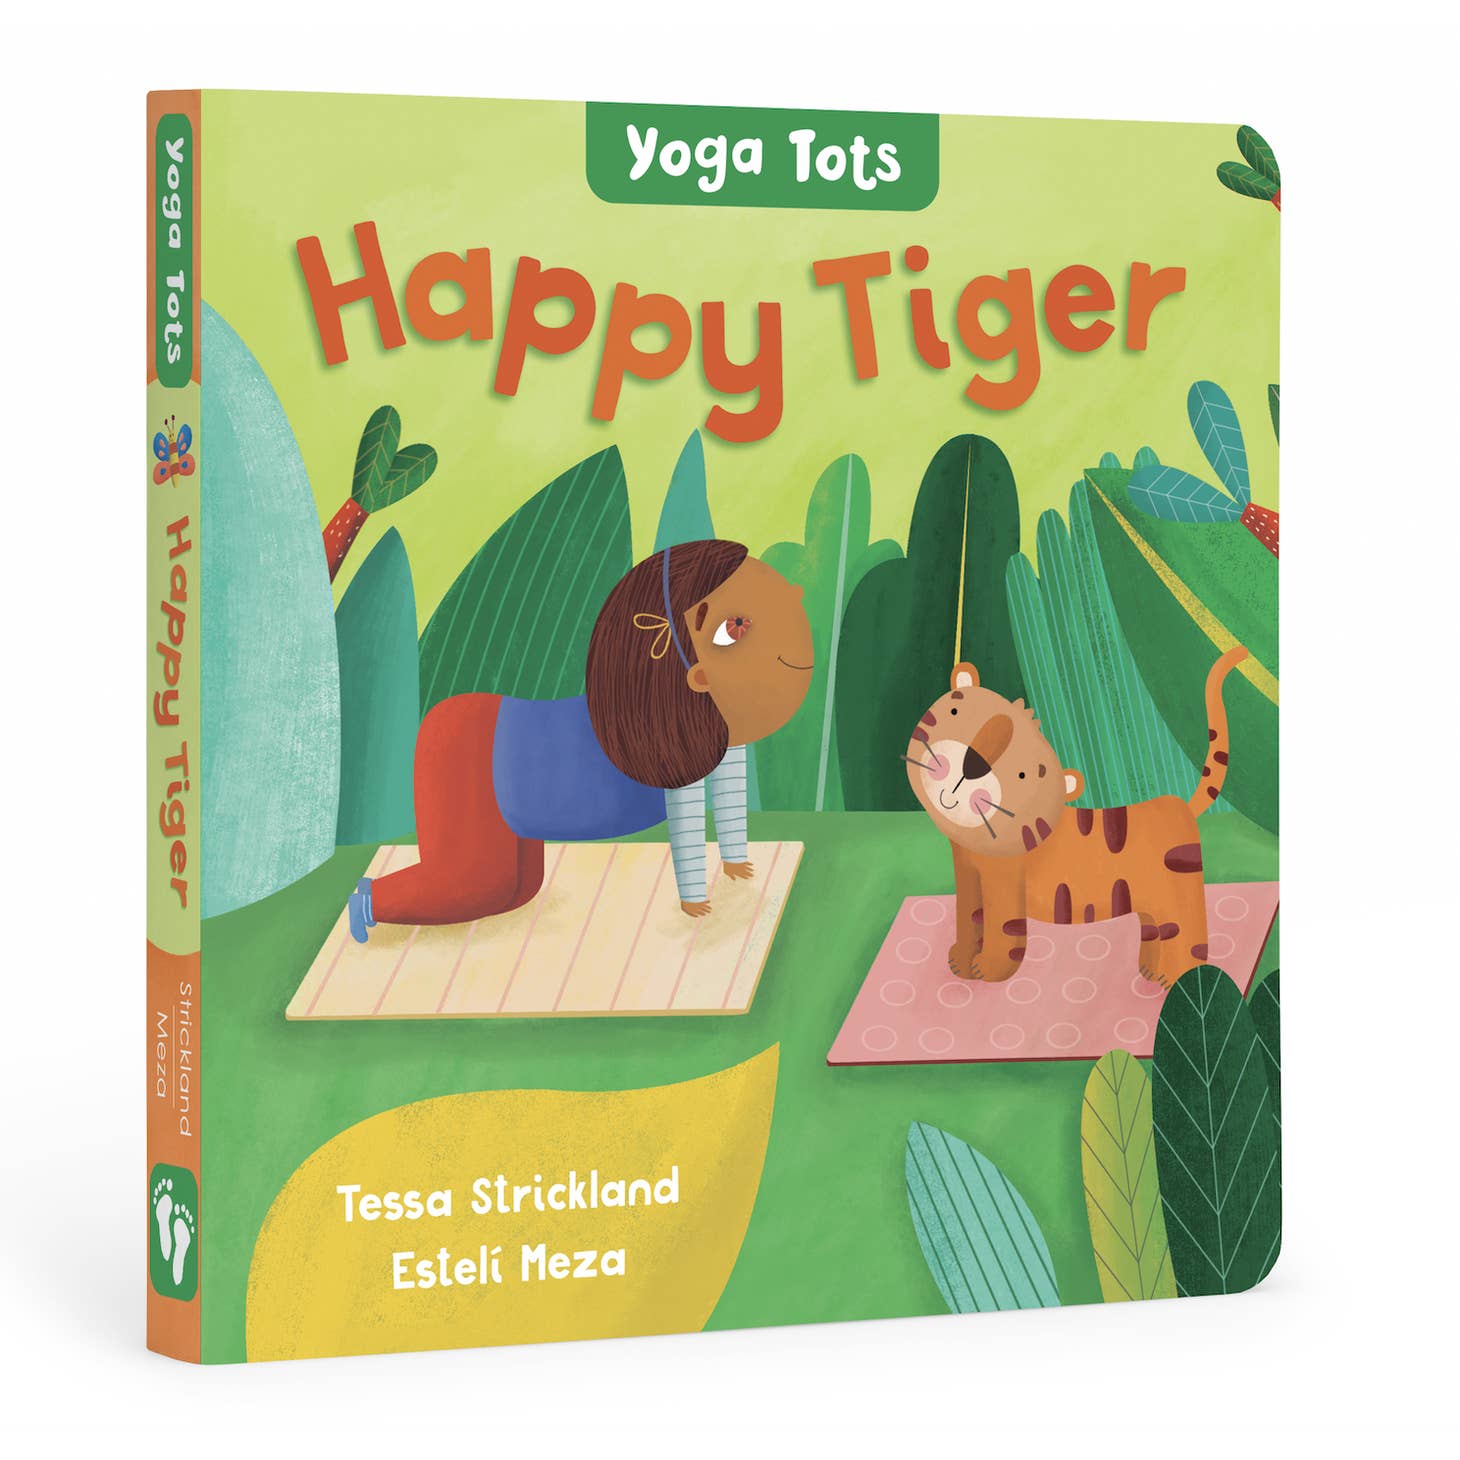 Yoga Tots: Happy Tiger